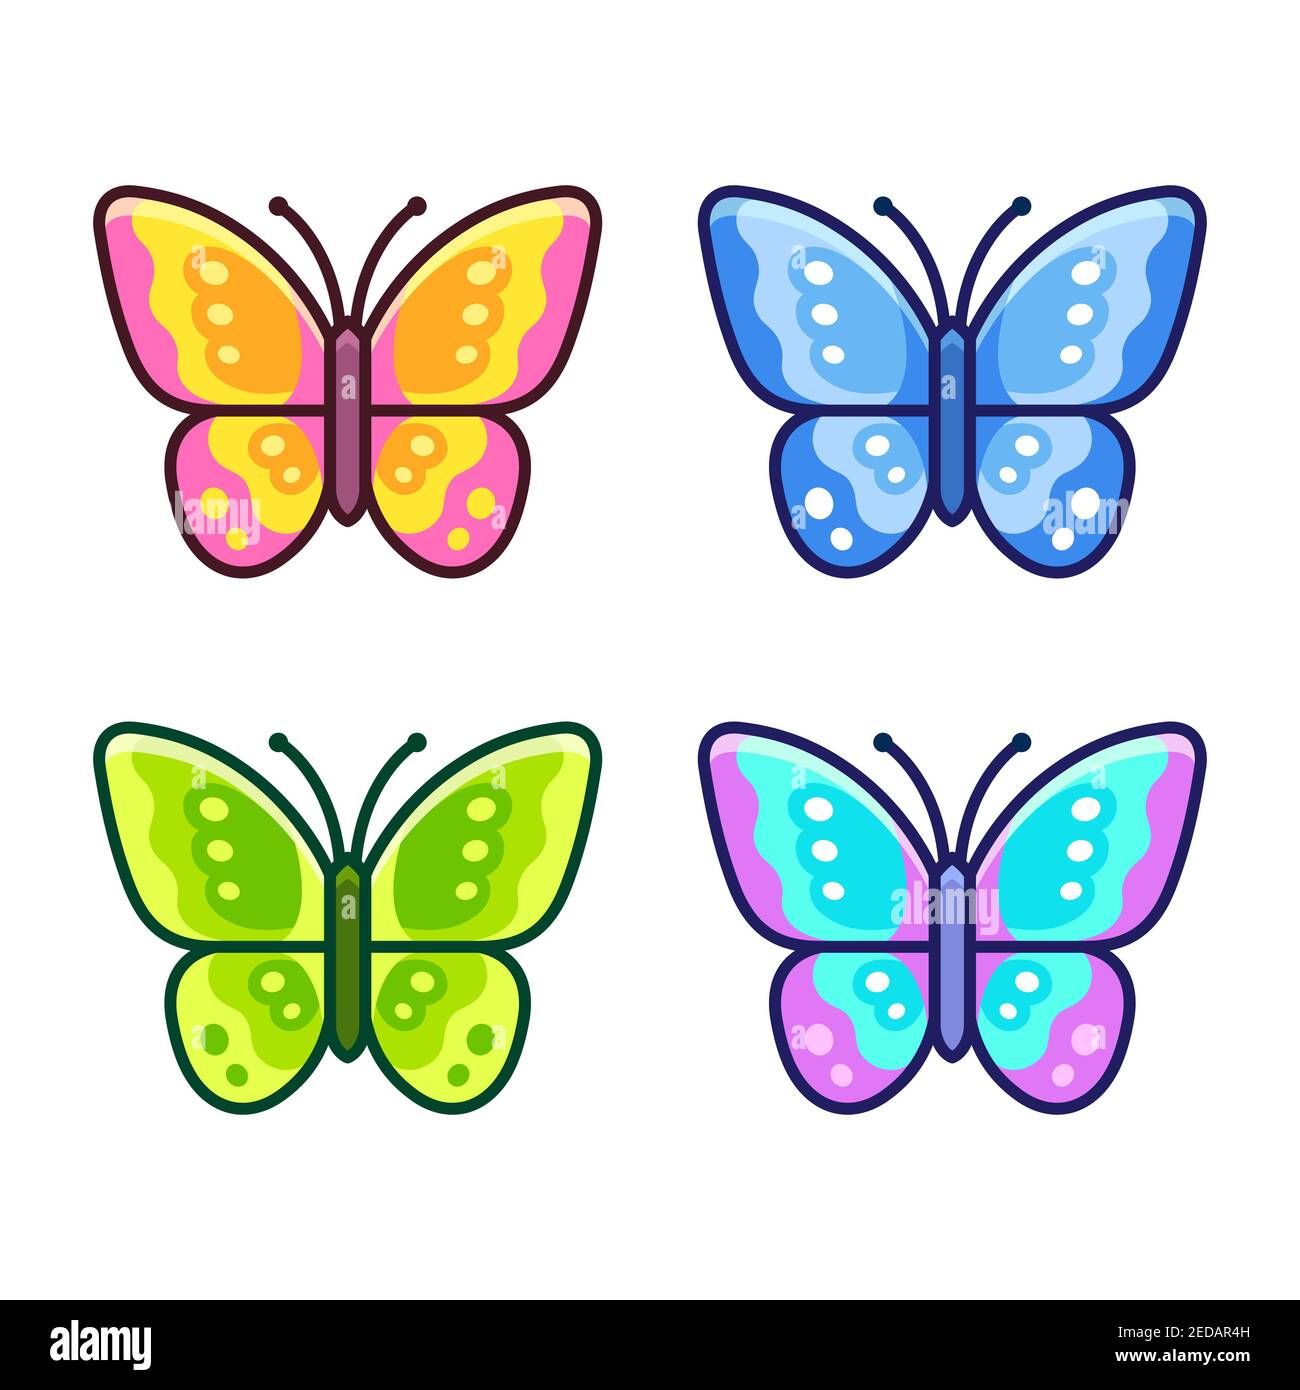 Cartoon Schmetterling Symbol in verschiedenen Farben gesetzt. Einfache flache Design Vektor-Illustration. Stock Vektor